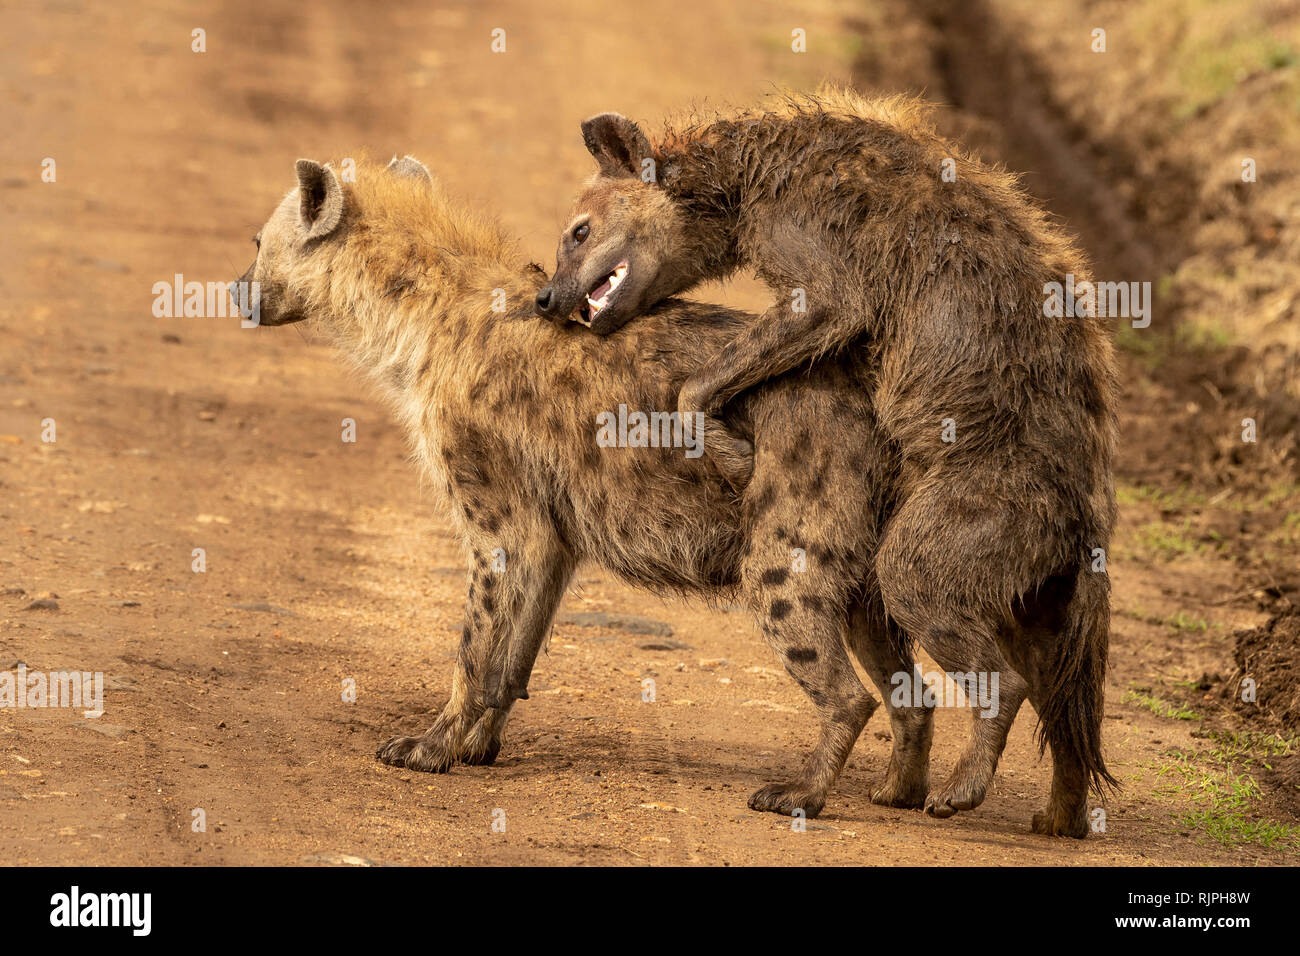 Observation inhabituelle de deux hyènes Crocuta crocuta l'accouplement dans le mara triangle dans le Masai Mara au Kenya Banque D'Images